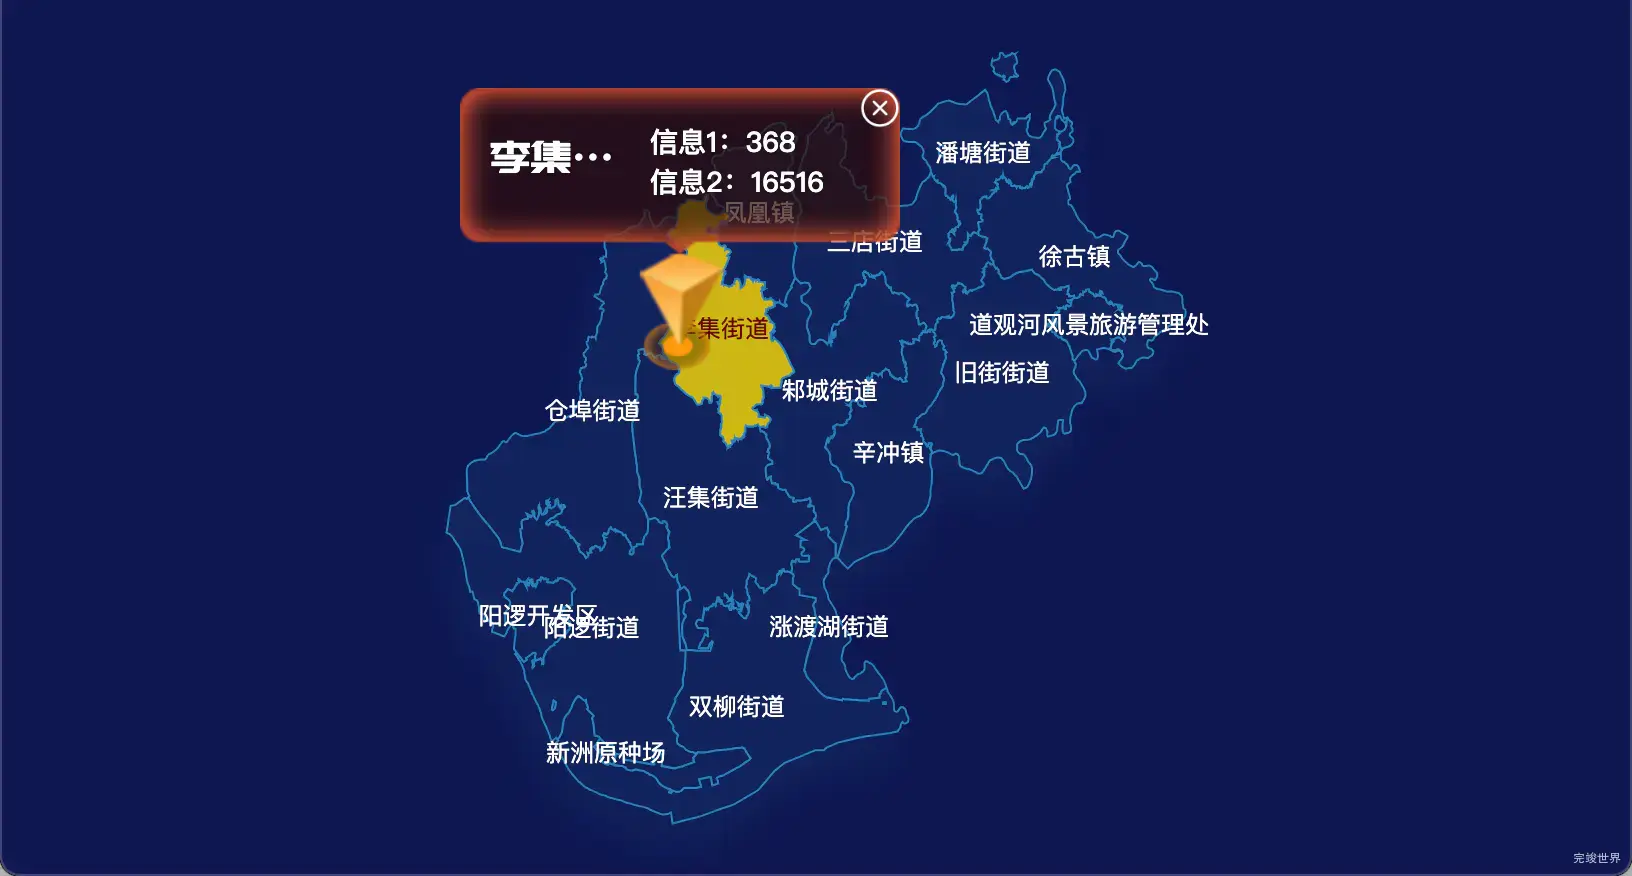 21 echarts 武汉市新洲区geoJson地图点击弹出自定义弹窗